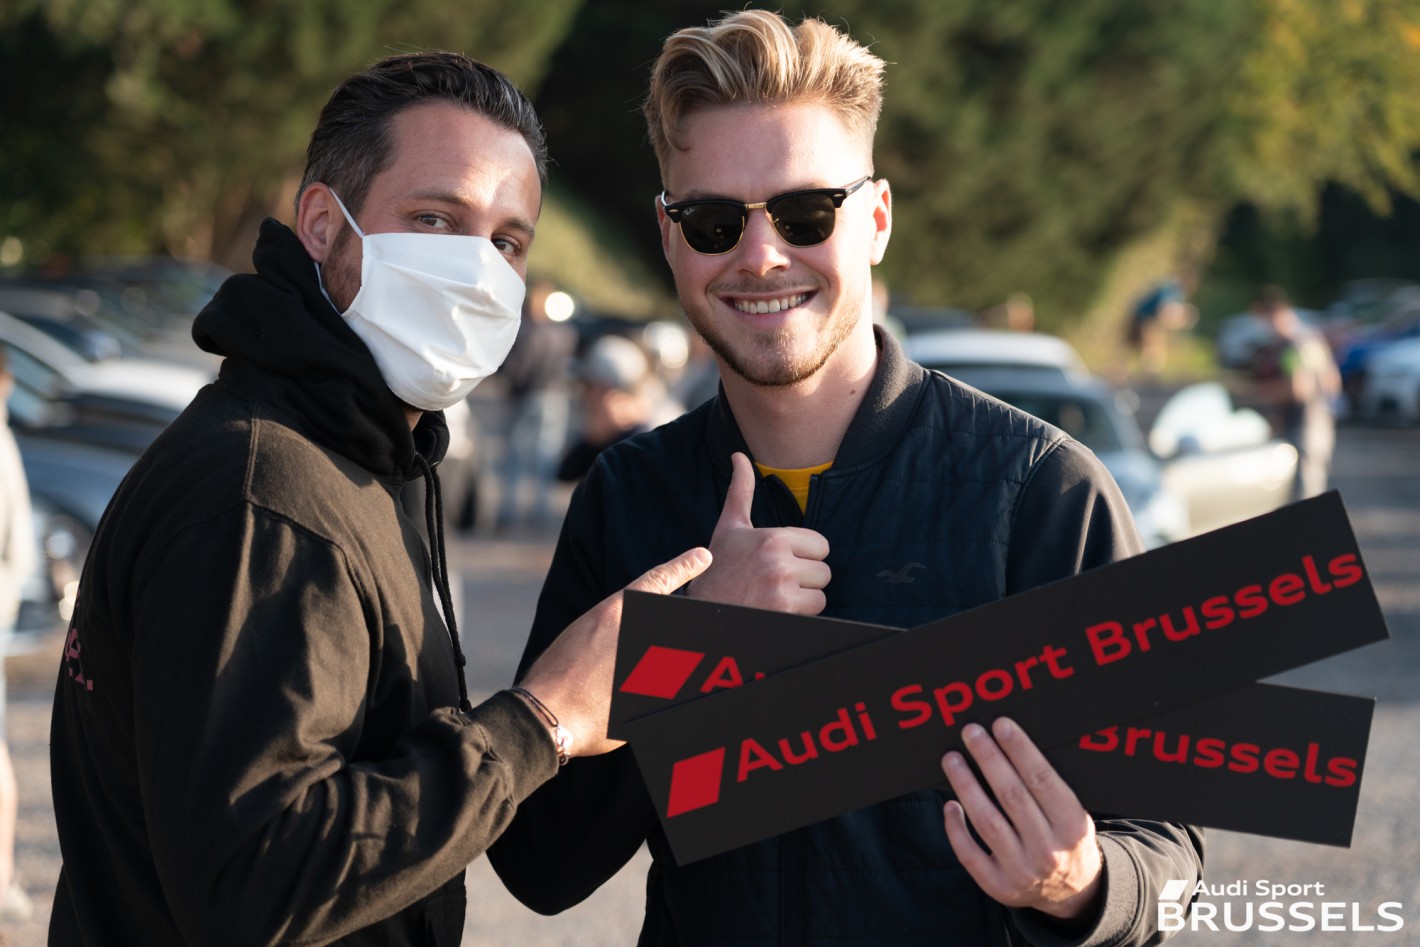 Audi Sport Brussels team